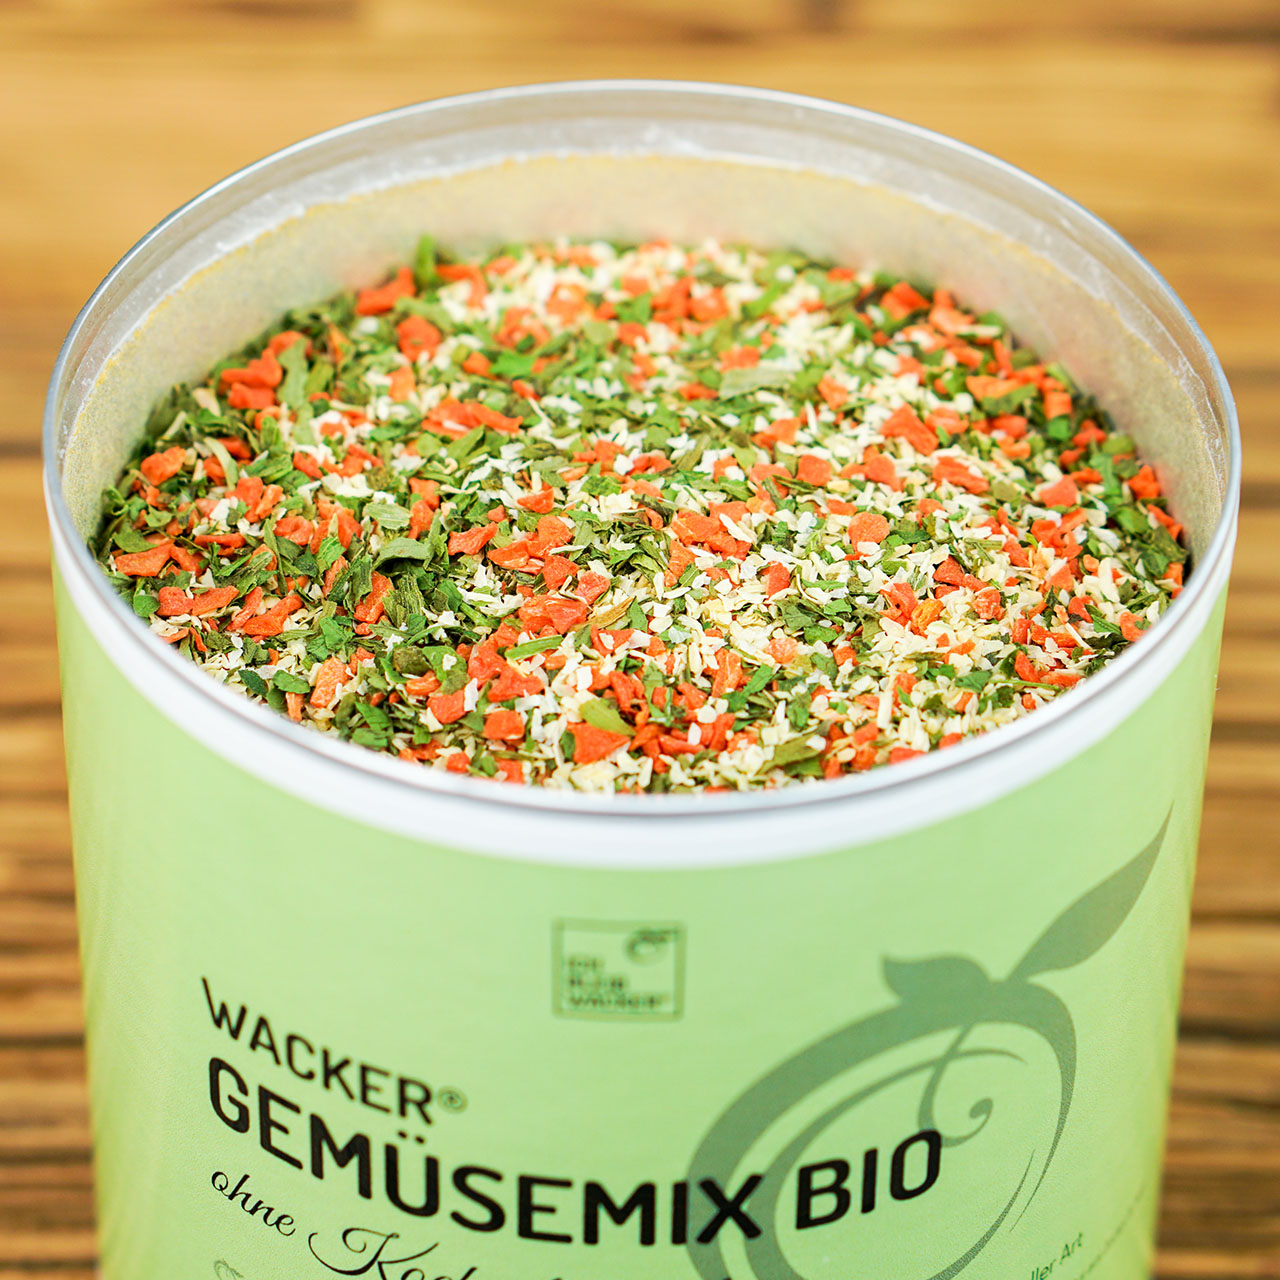 Wacker Gemüsemix ohne Kochsalzzusatz Bio, 250g Dose